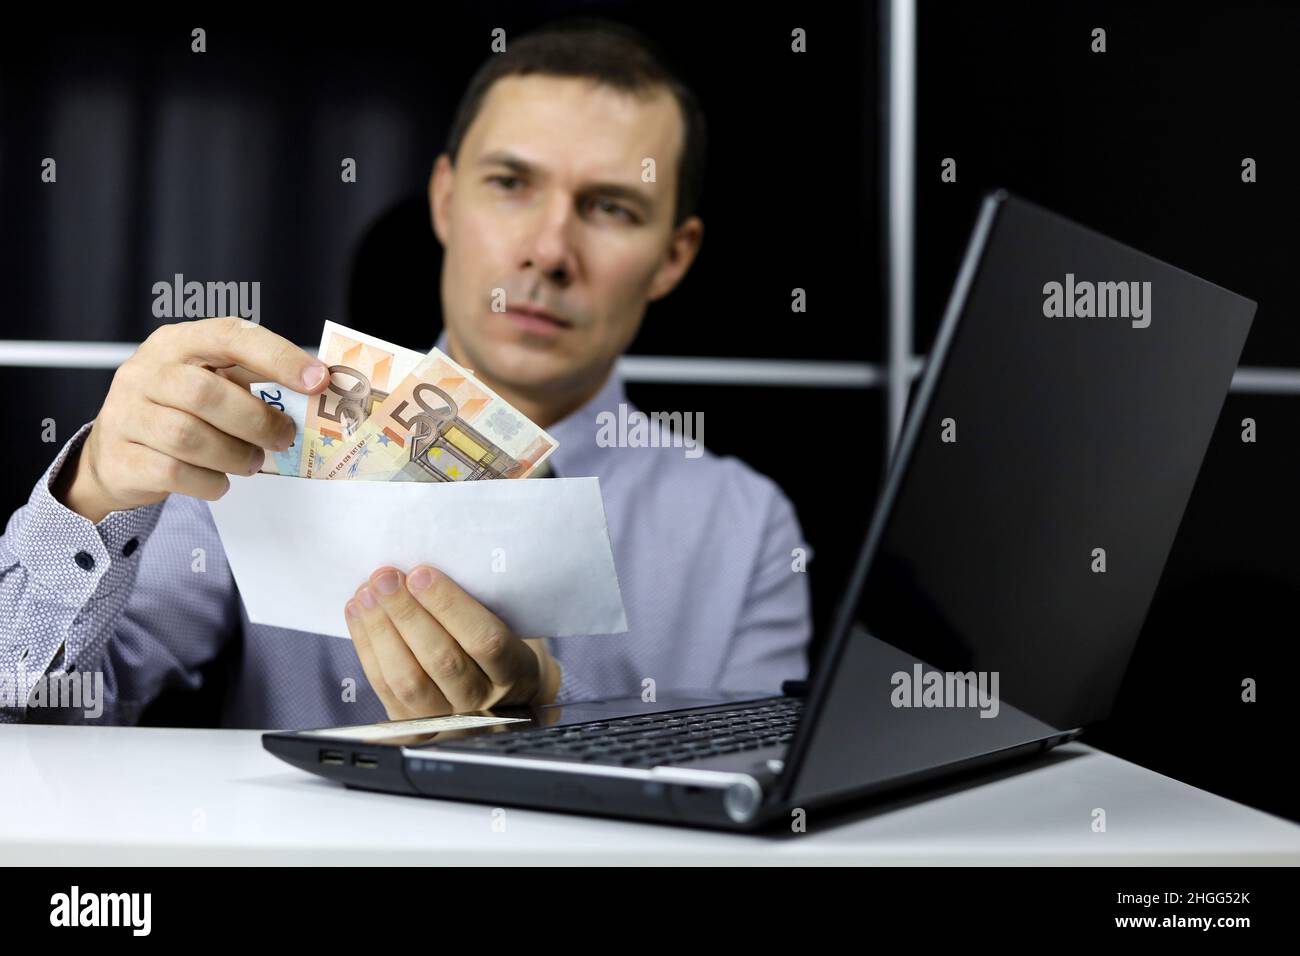 Enveloppe avec des billets en euros entre les mains de l'homme dans les vêtements de bureau assis à l'ordinateur portable.Concept de salaire, de prime ou de pot-de-vin Banque D'Images